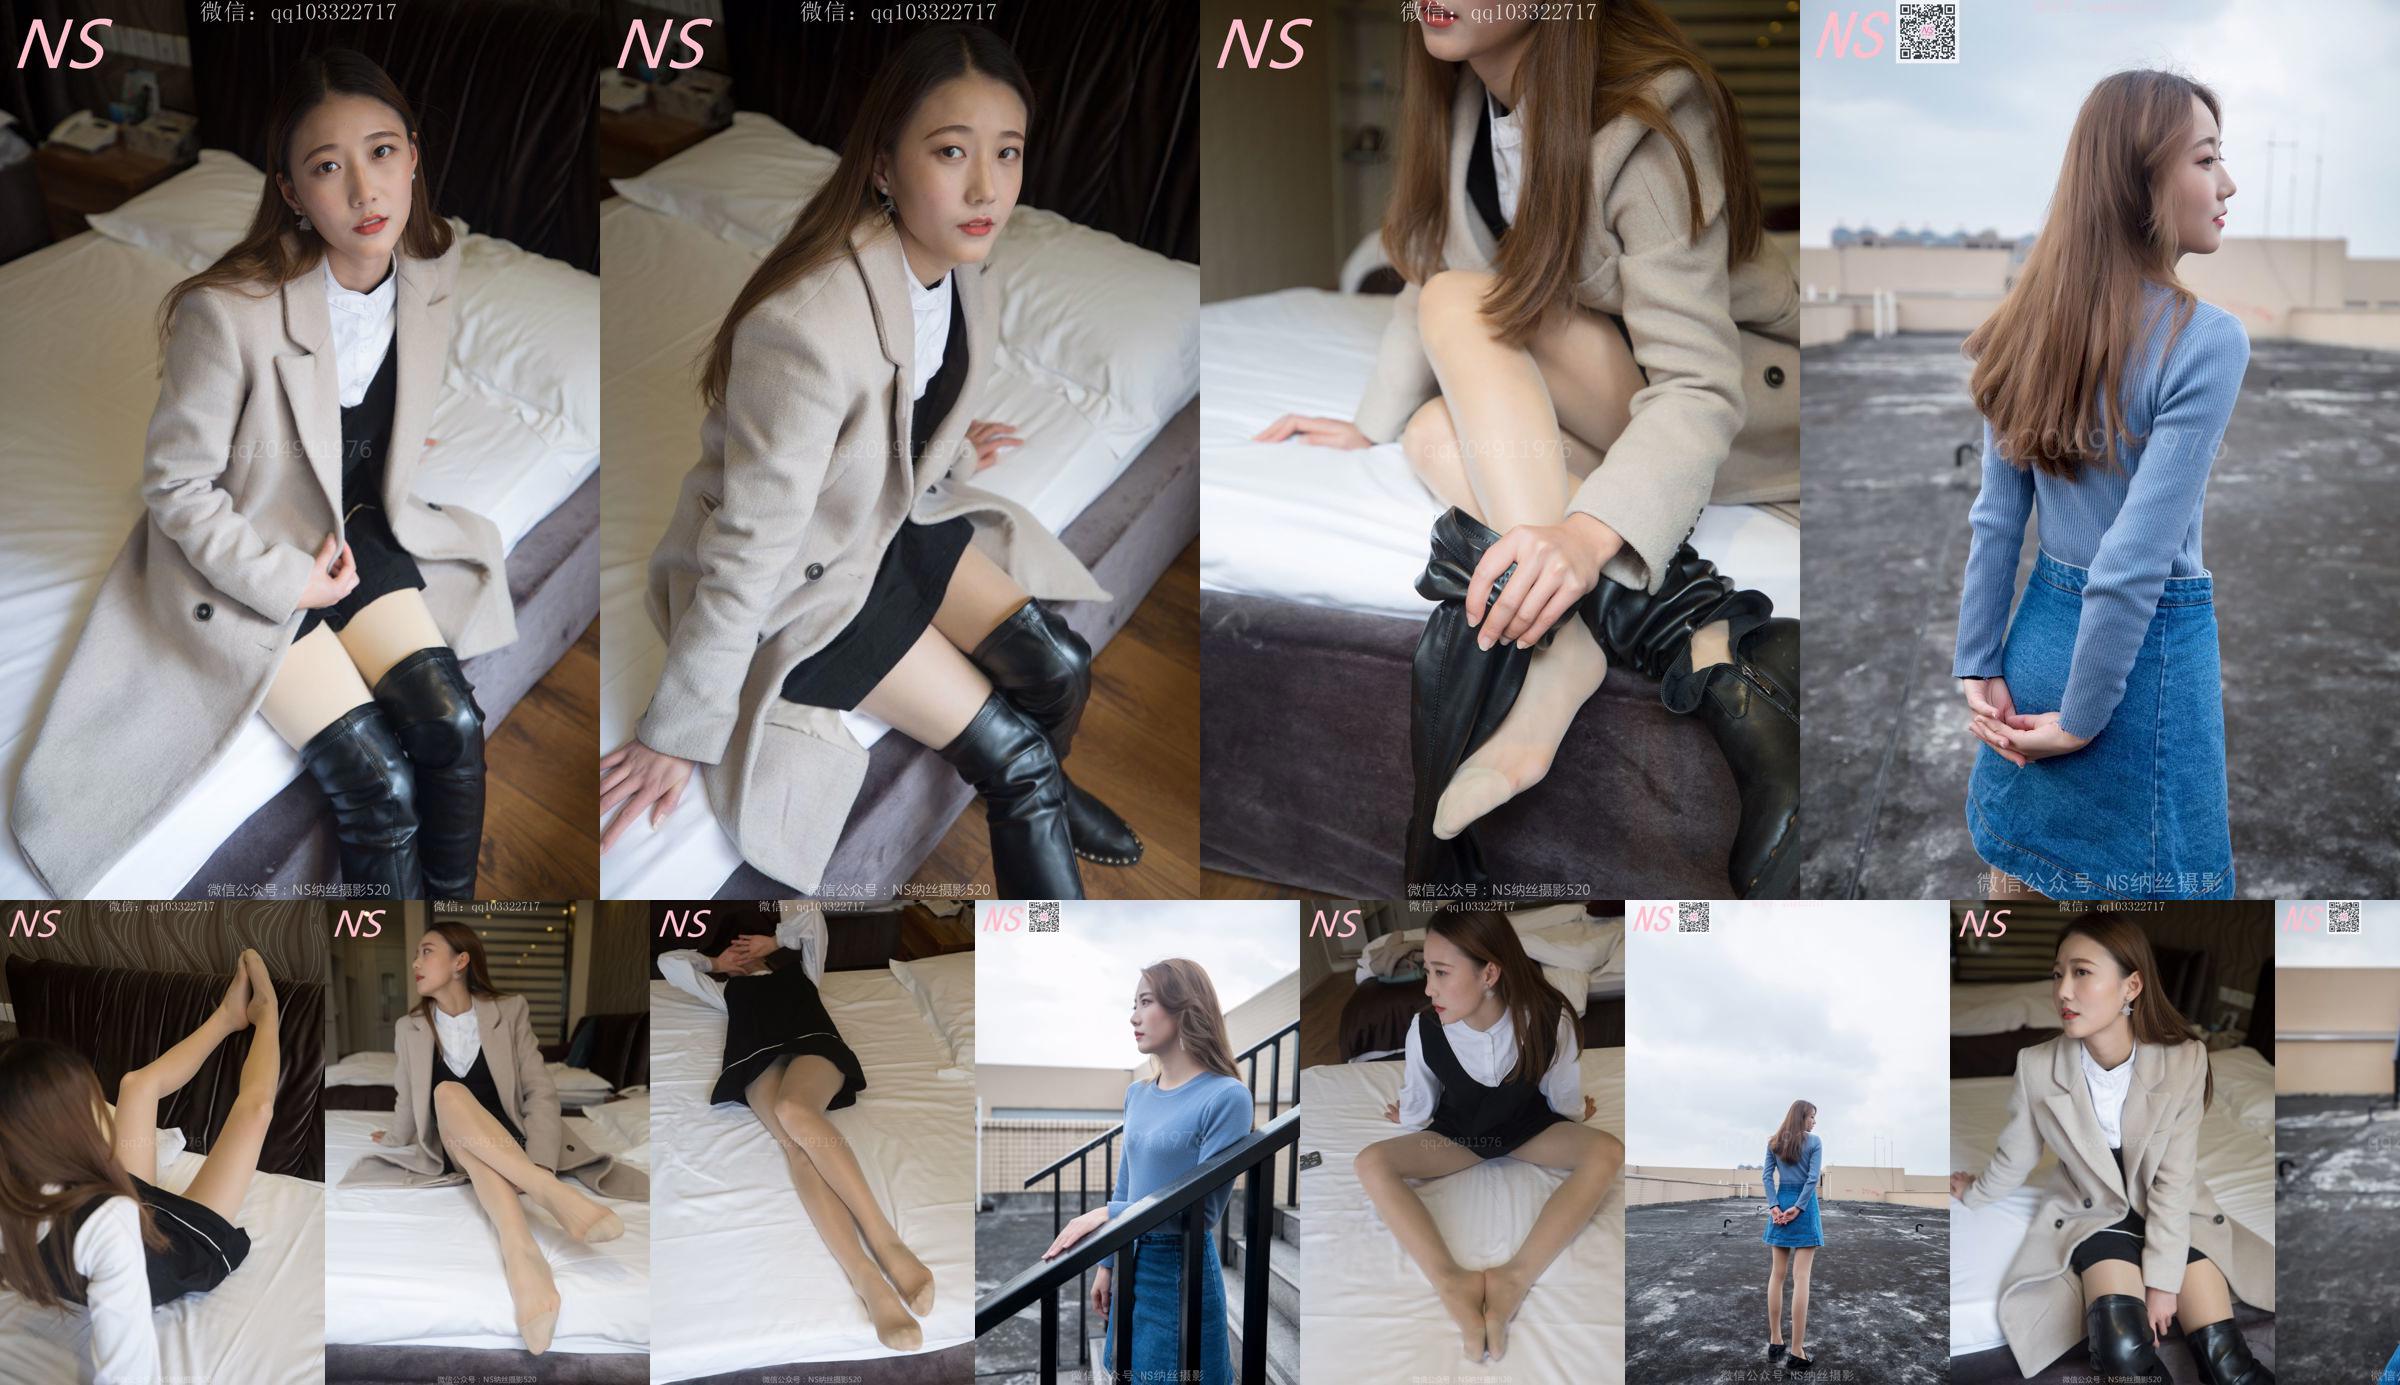 Shu Yi "Cuộc gặp gỡ với đôi giày cao cổ" [Nass Photography] No.32e1df Trang 3